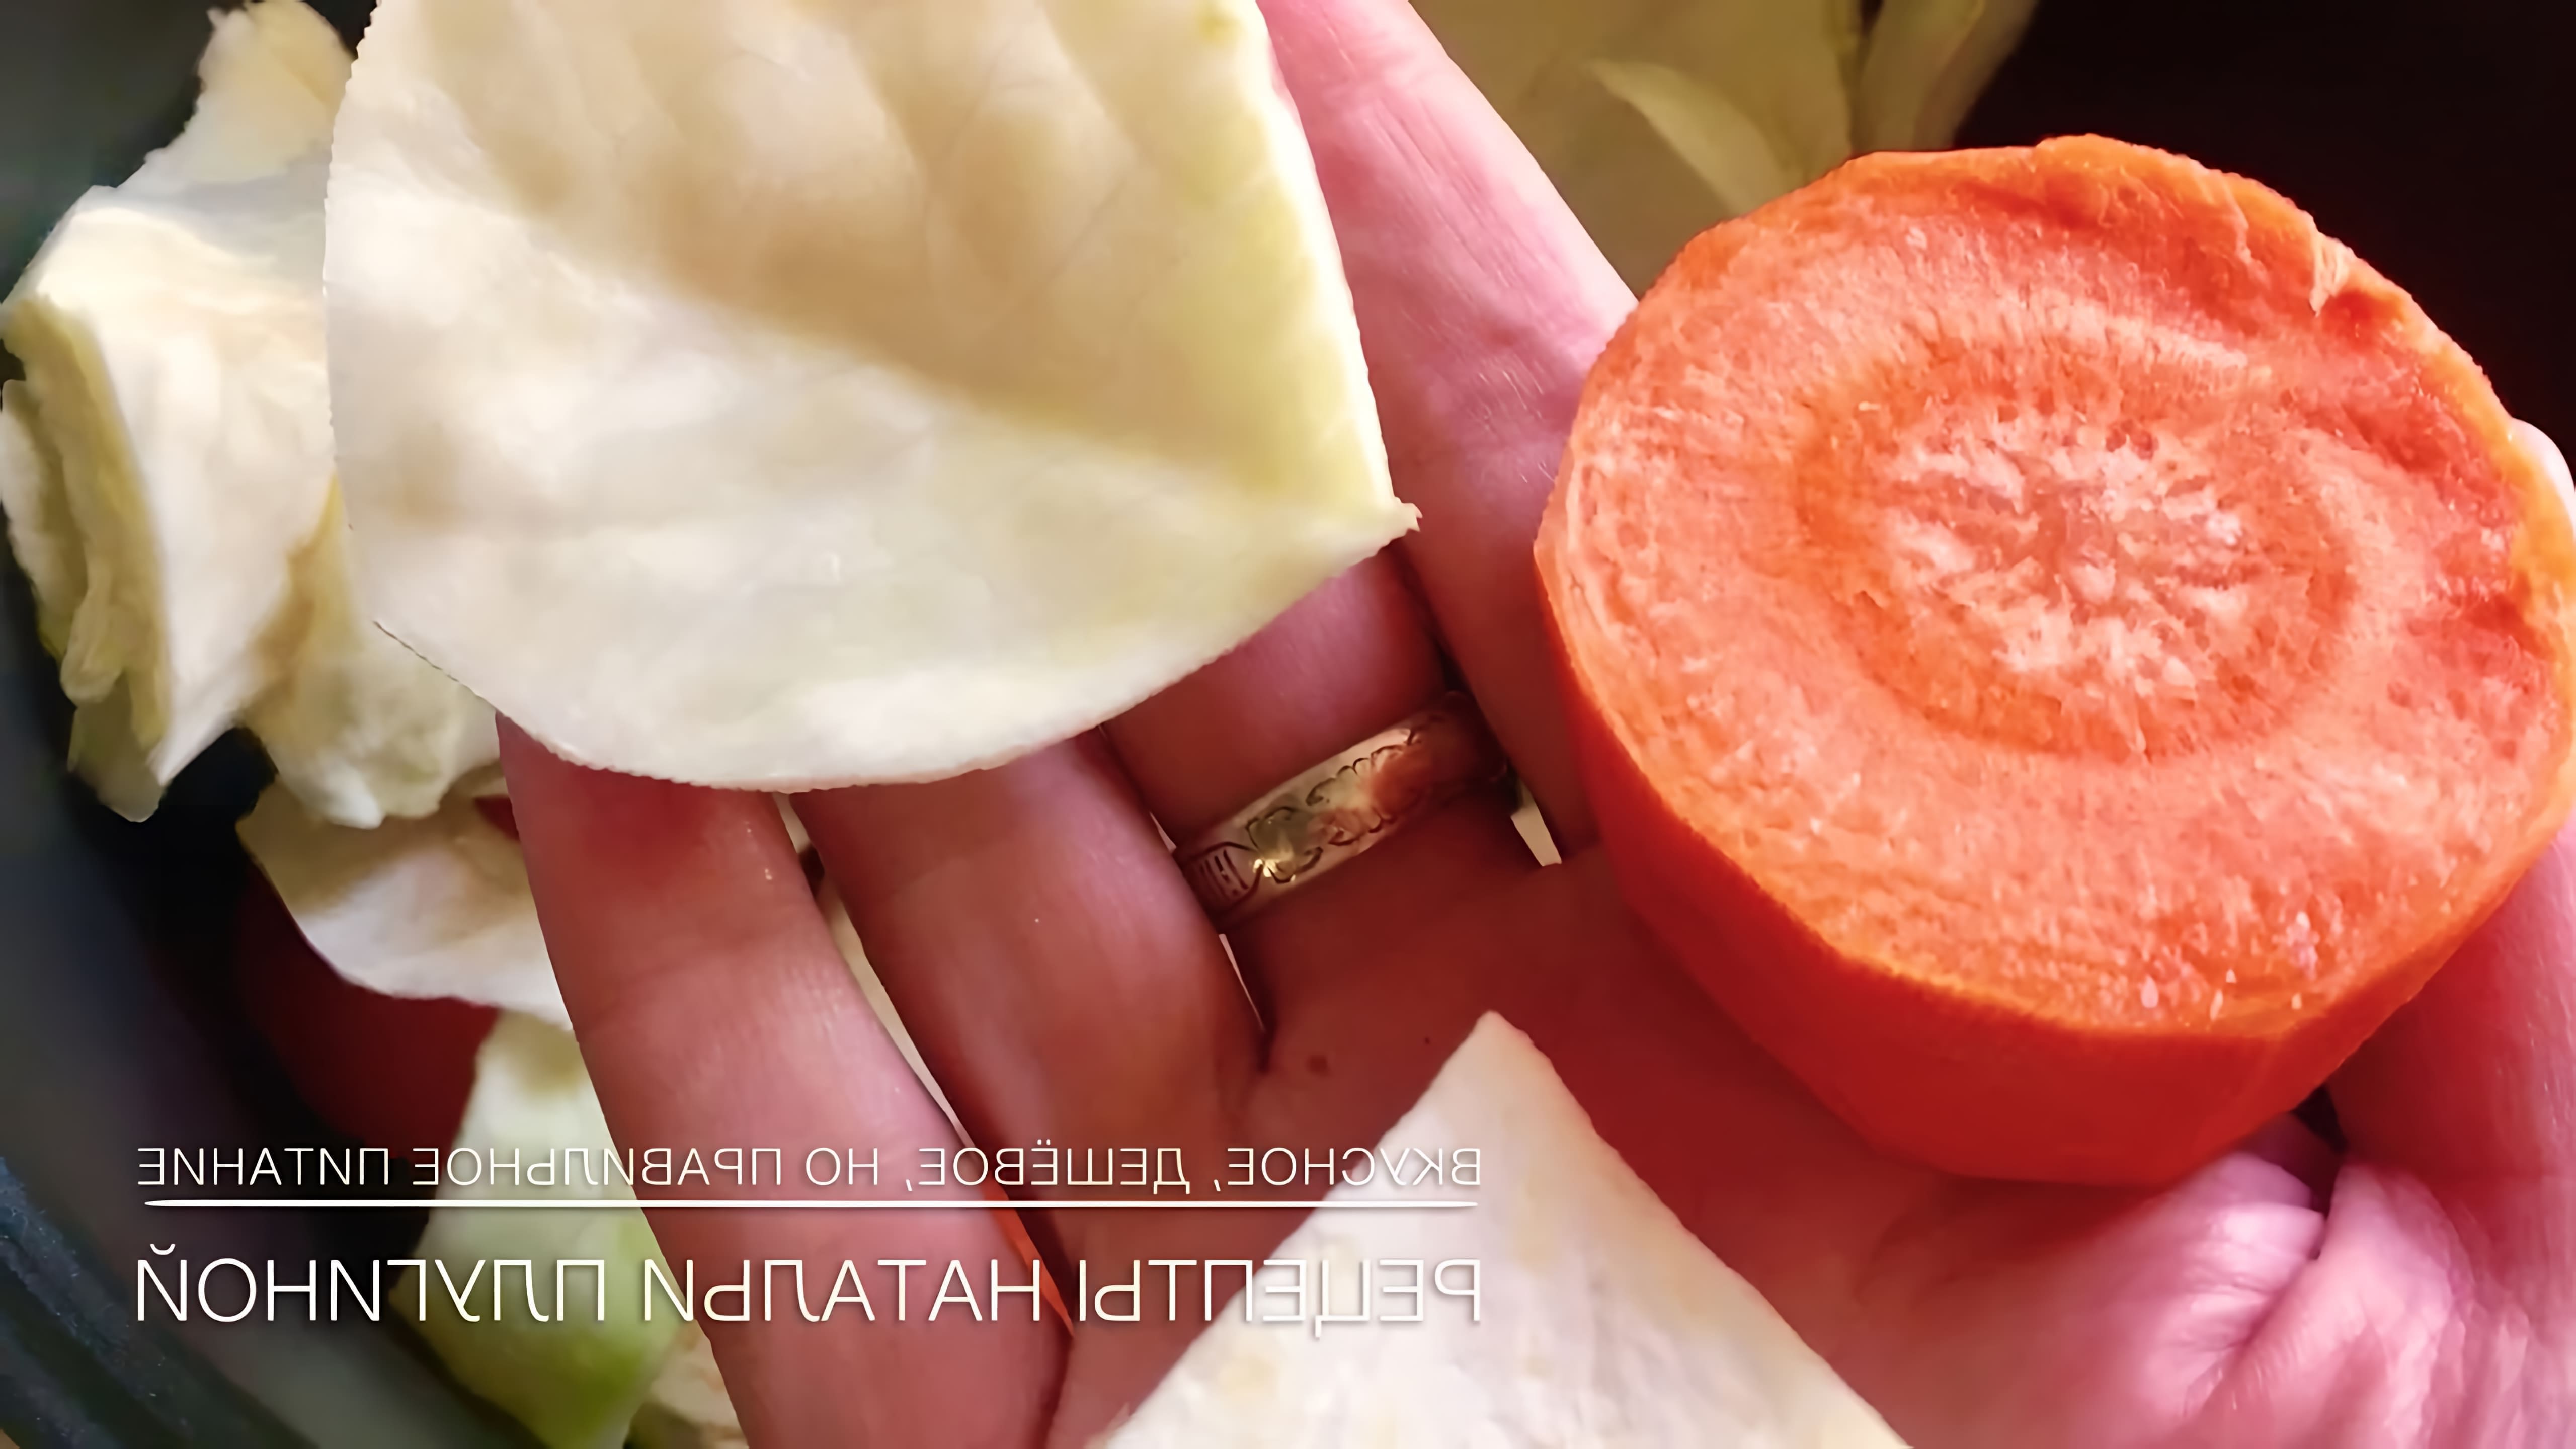 В данном видео-ролике Наталья Плугина, эксперт по правильному питанию, делится рецептами приготовления супа-пюре из корня сельдерея, моркови и капусты